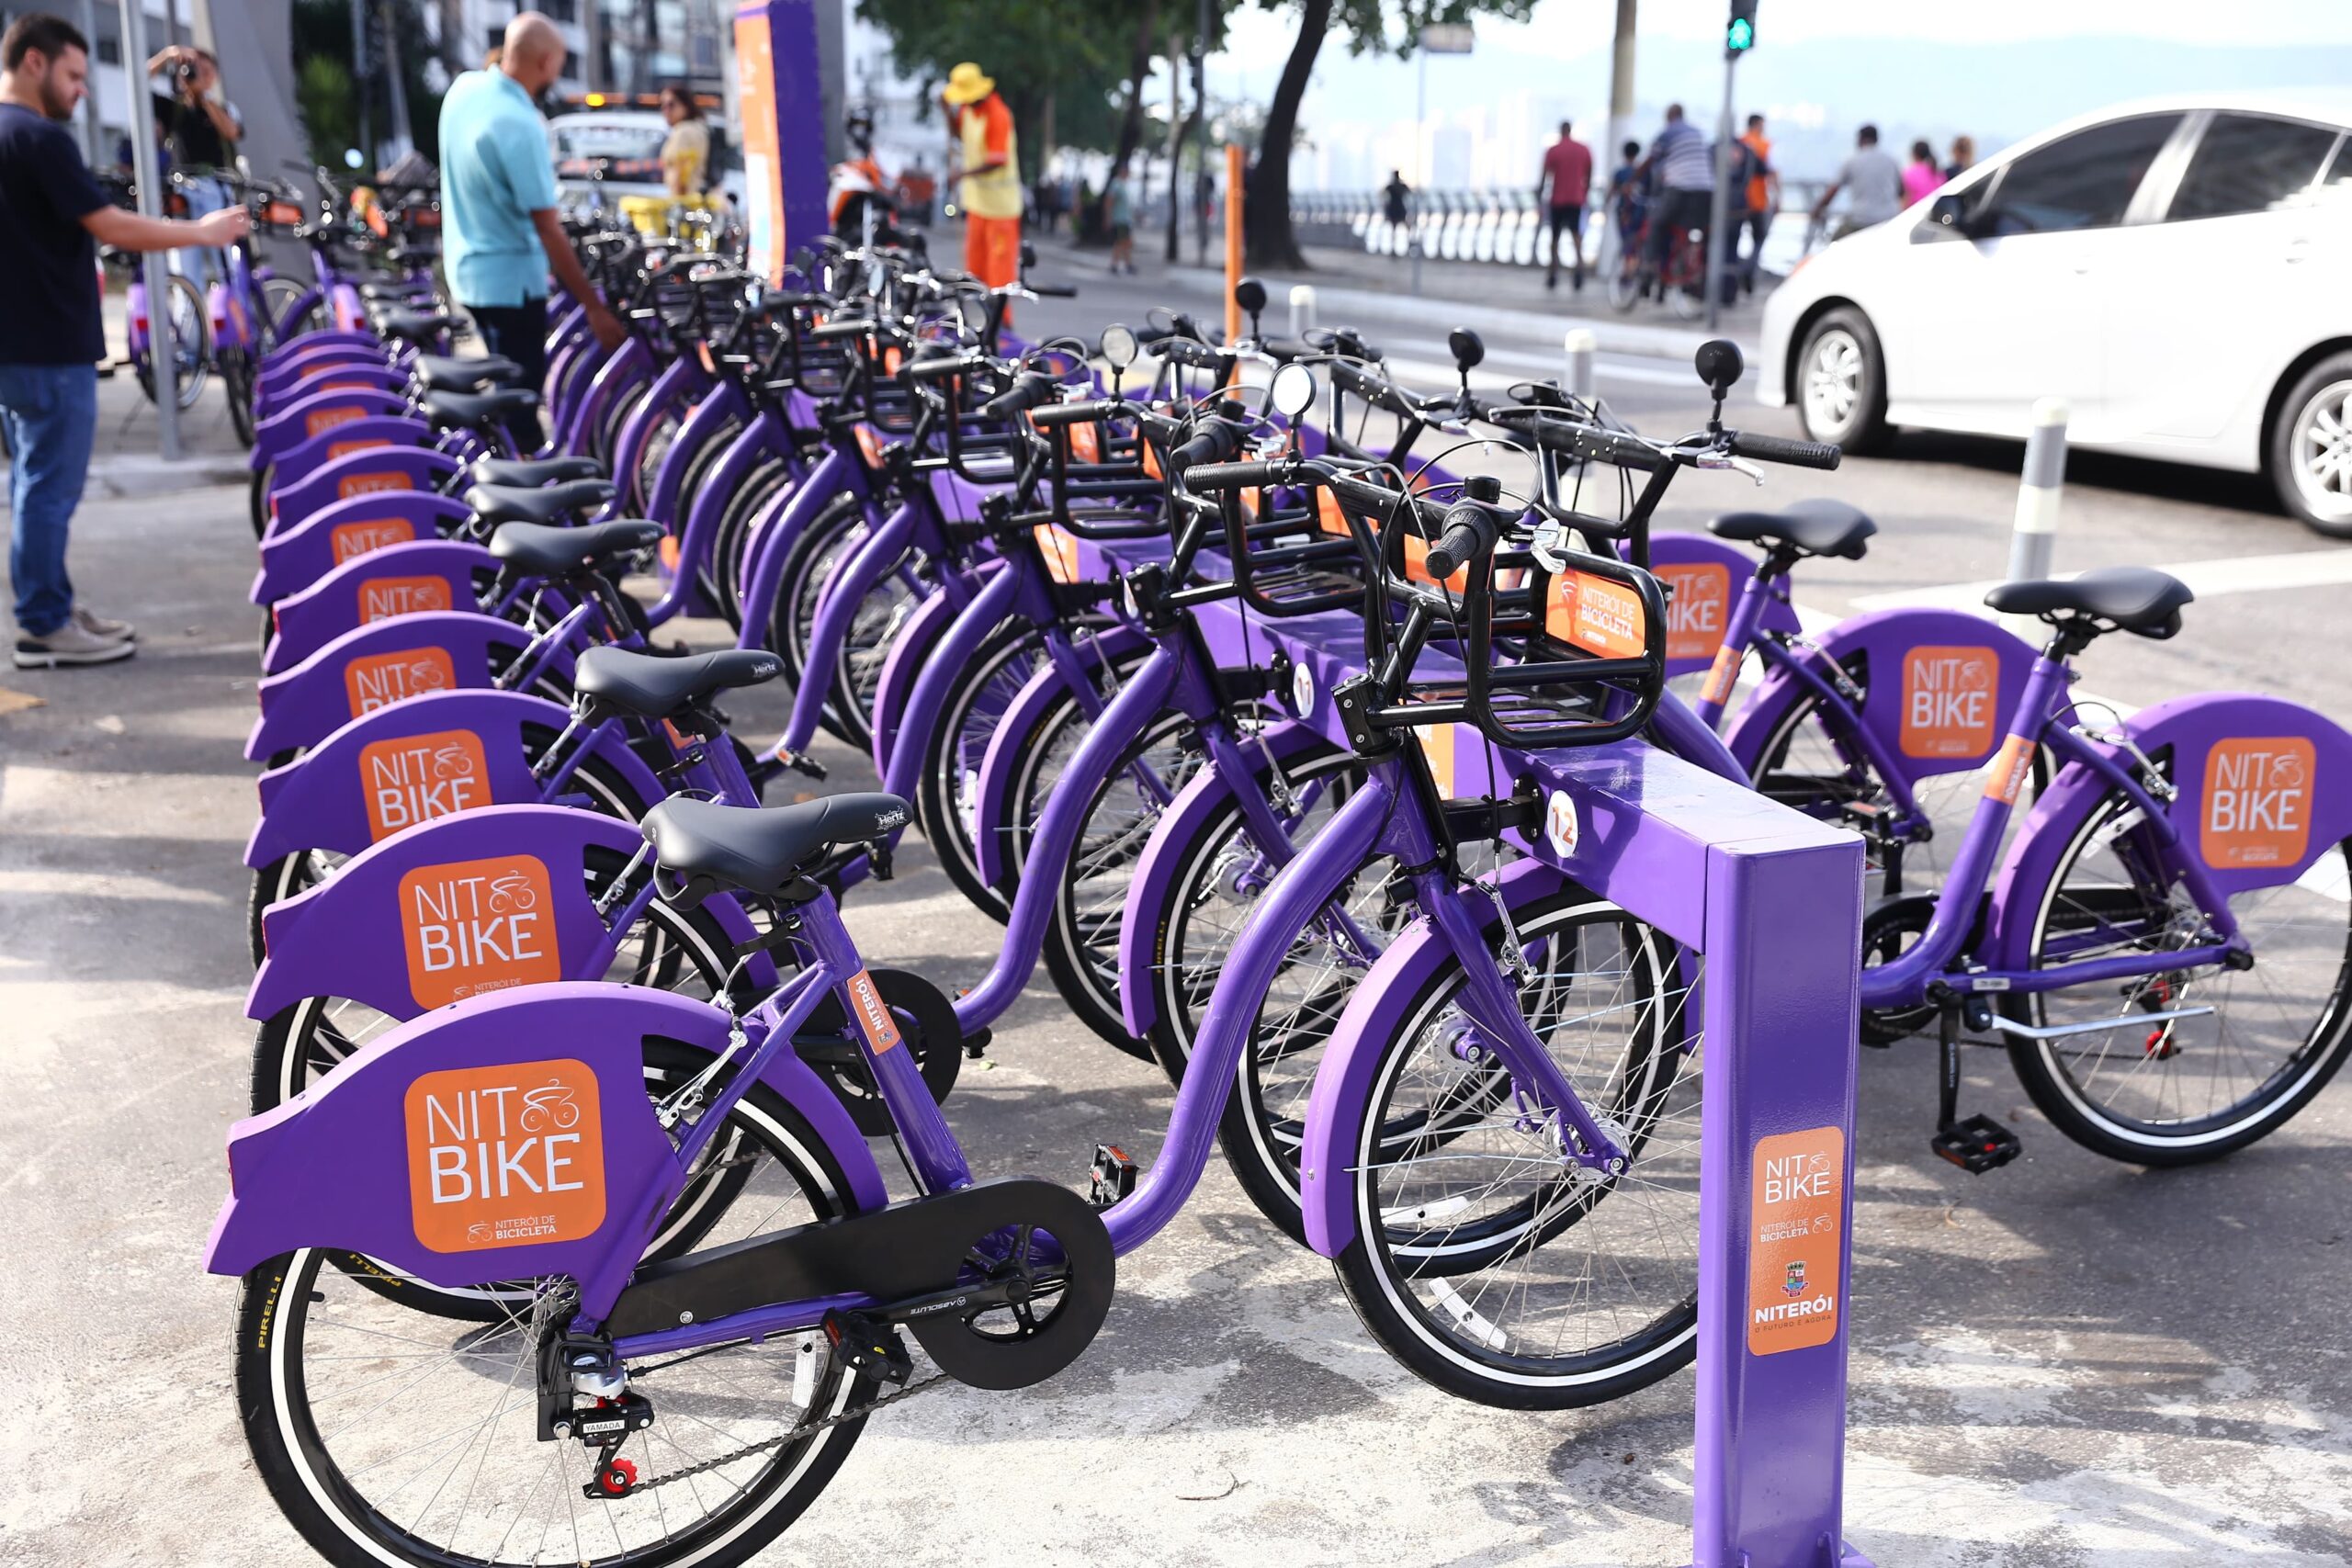 Niterói inaugura o NitBike, novo sistema de bicicletas compartilhadas da cidade